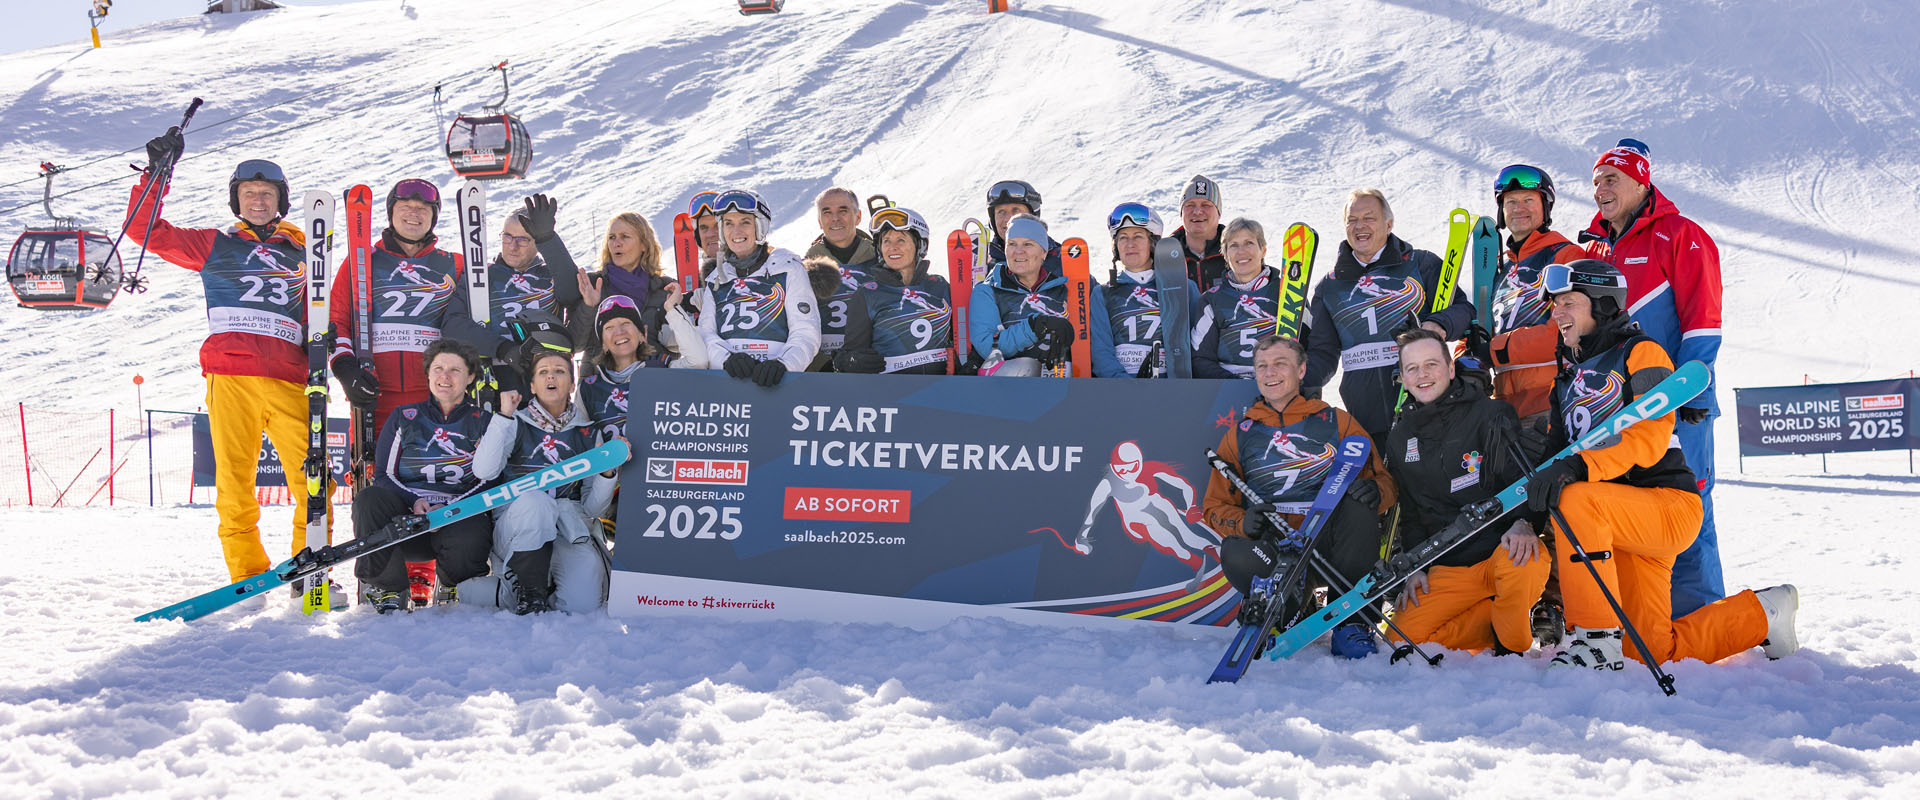 fis alpinen ski weltmeisterschaften 2025 in saalbach hinterglemm